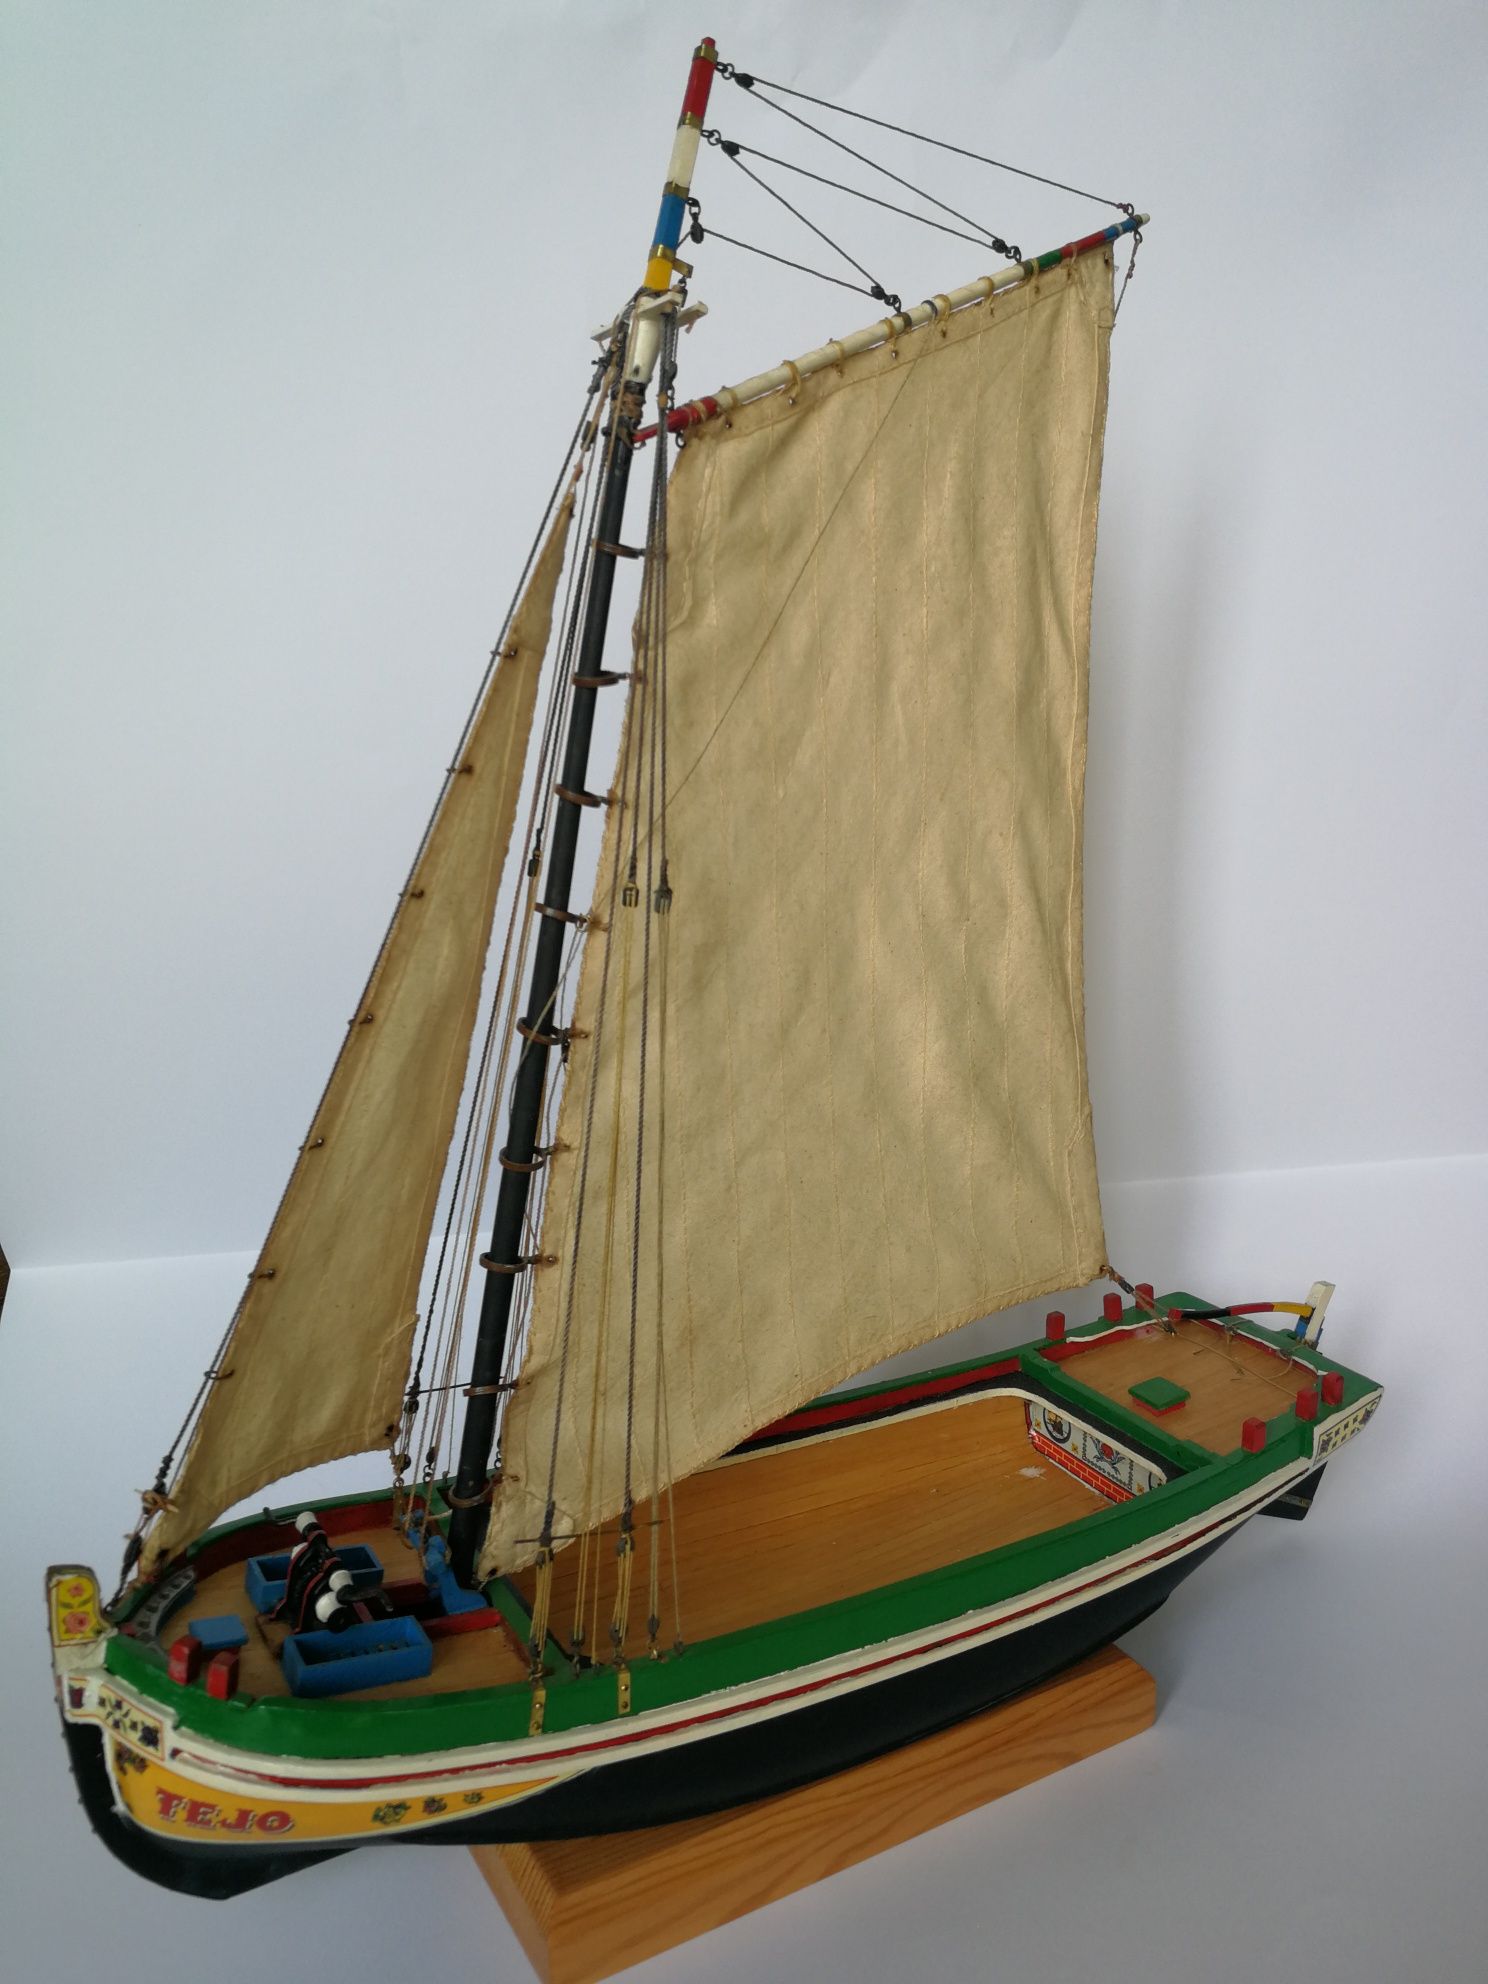 Modelo de Fragata do Tejo